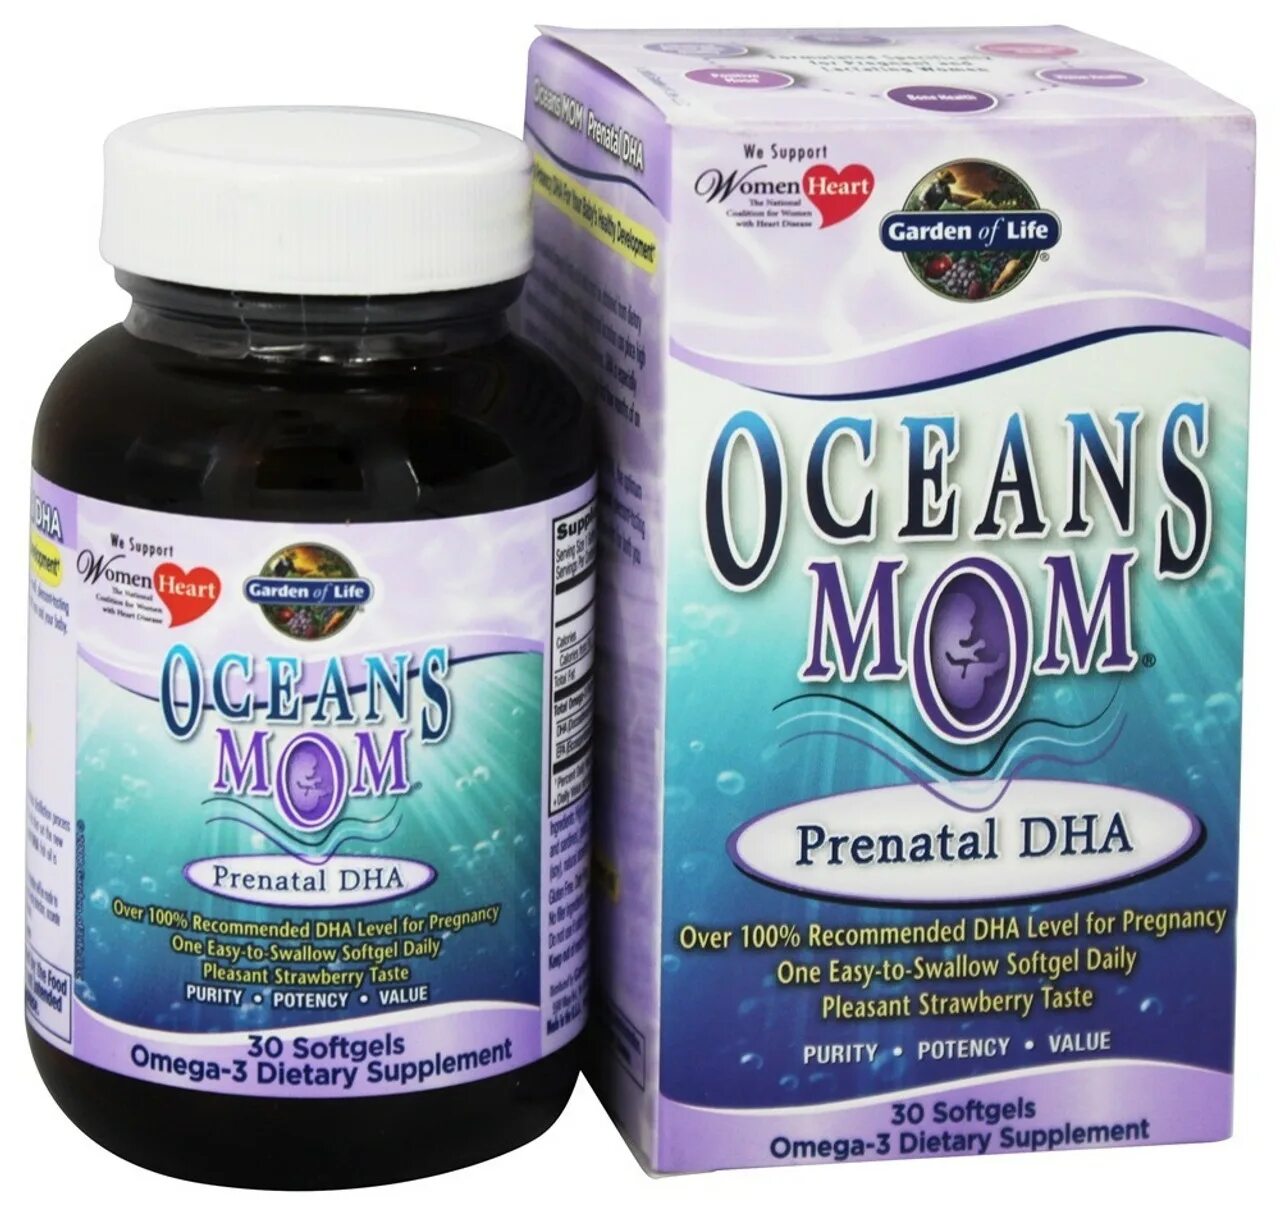 Vitamin code prenatal. Omega 3 Prenatal DHA. Витамины Garden of Life Prenatal. Prenatal DHA витамины для беременных. Garden Life Prenatal Vitamin.